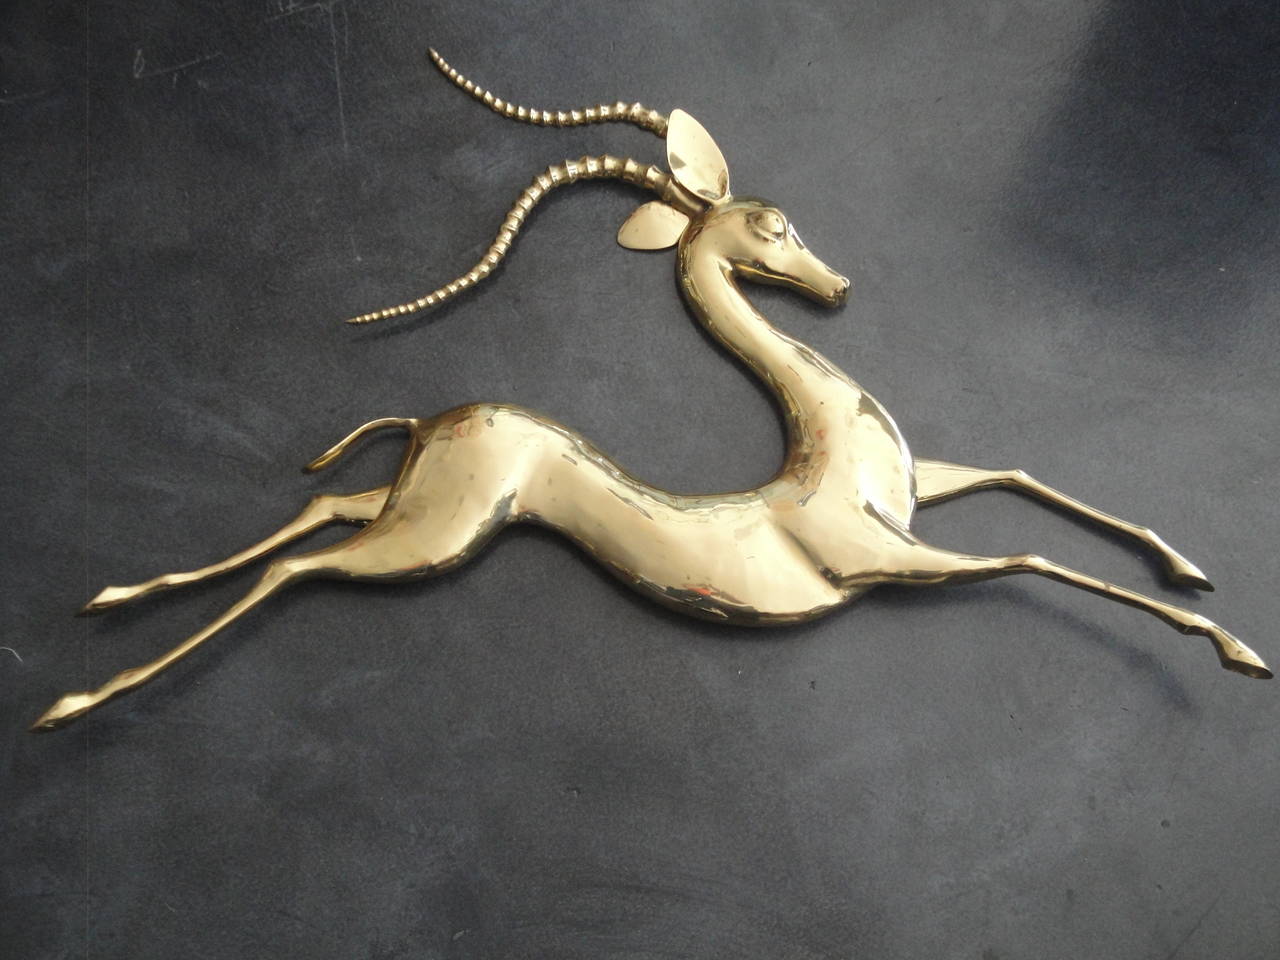 Brass antelope wall sculpture by Bijan.